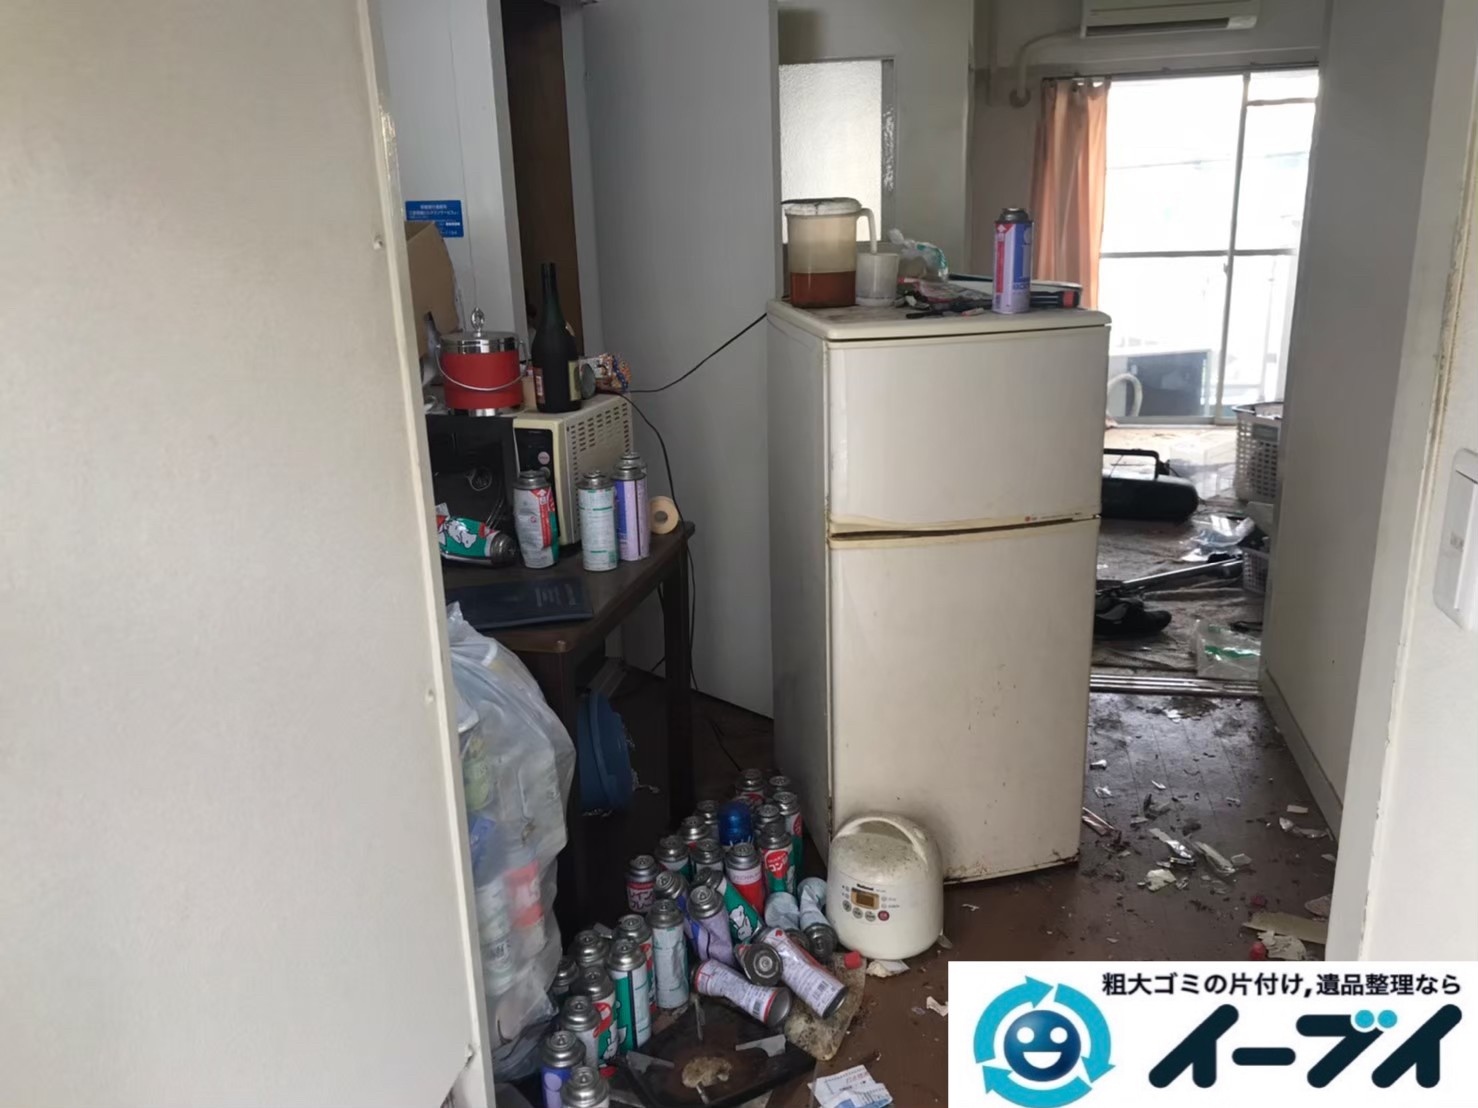 2020年7月10日大阪府交野市で不要な物やゴミが散乱しゴミ屋敷化した汚部屋の片付け作業です。写真1